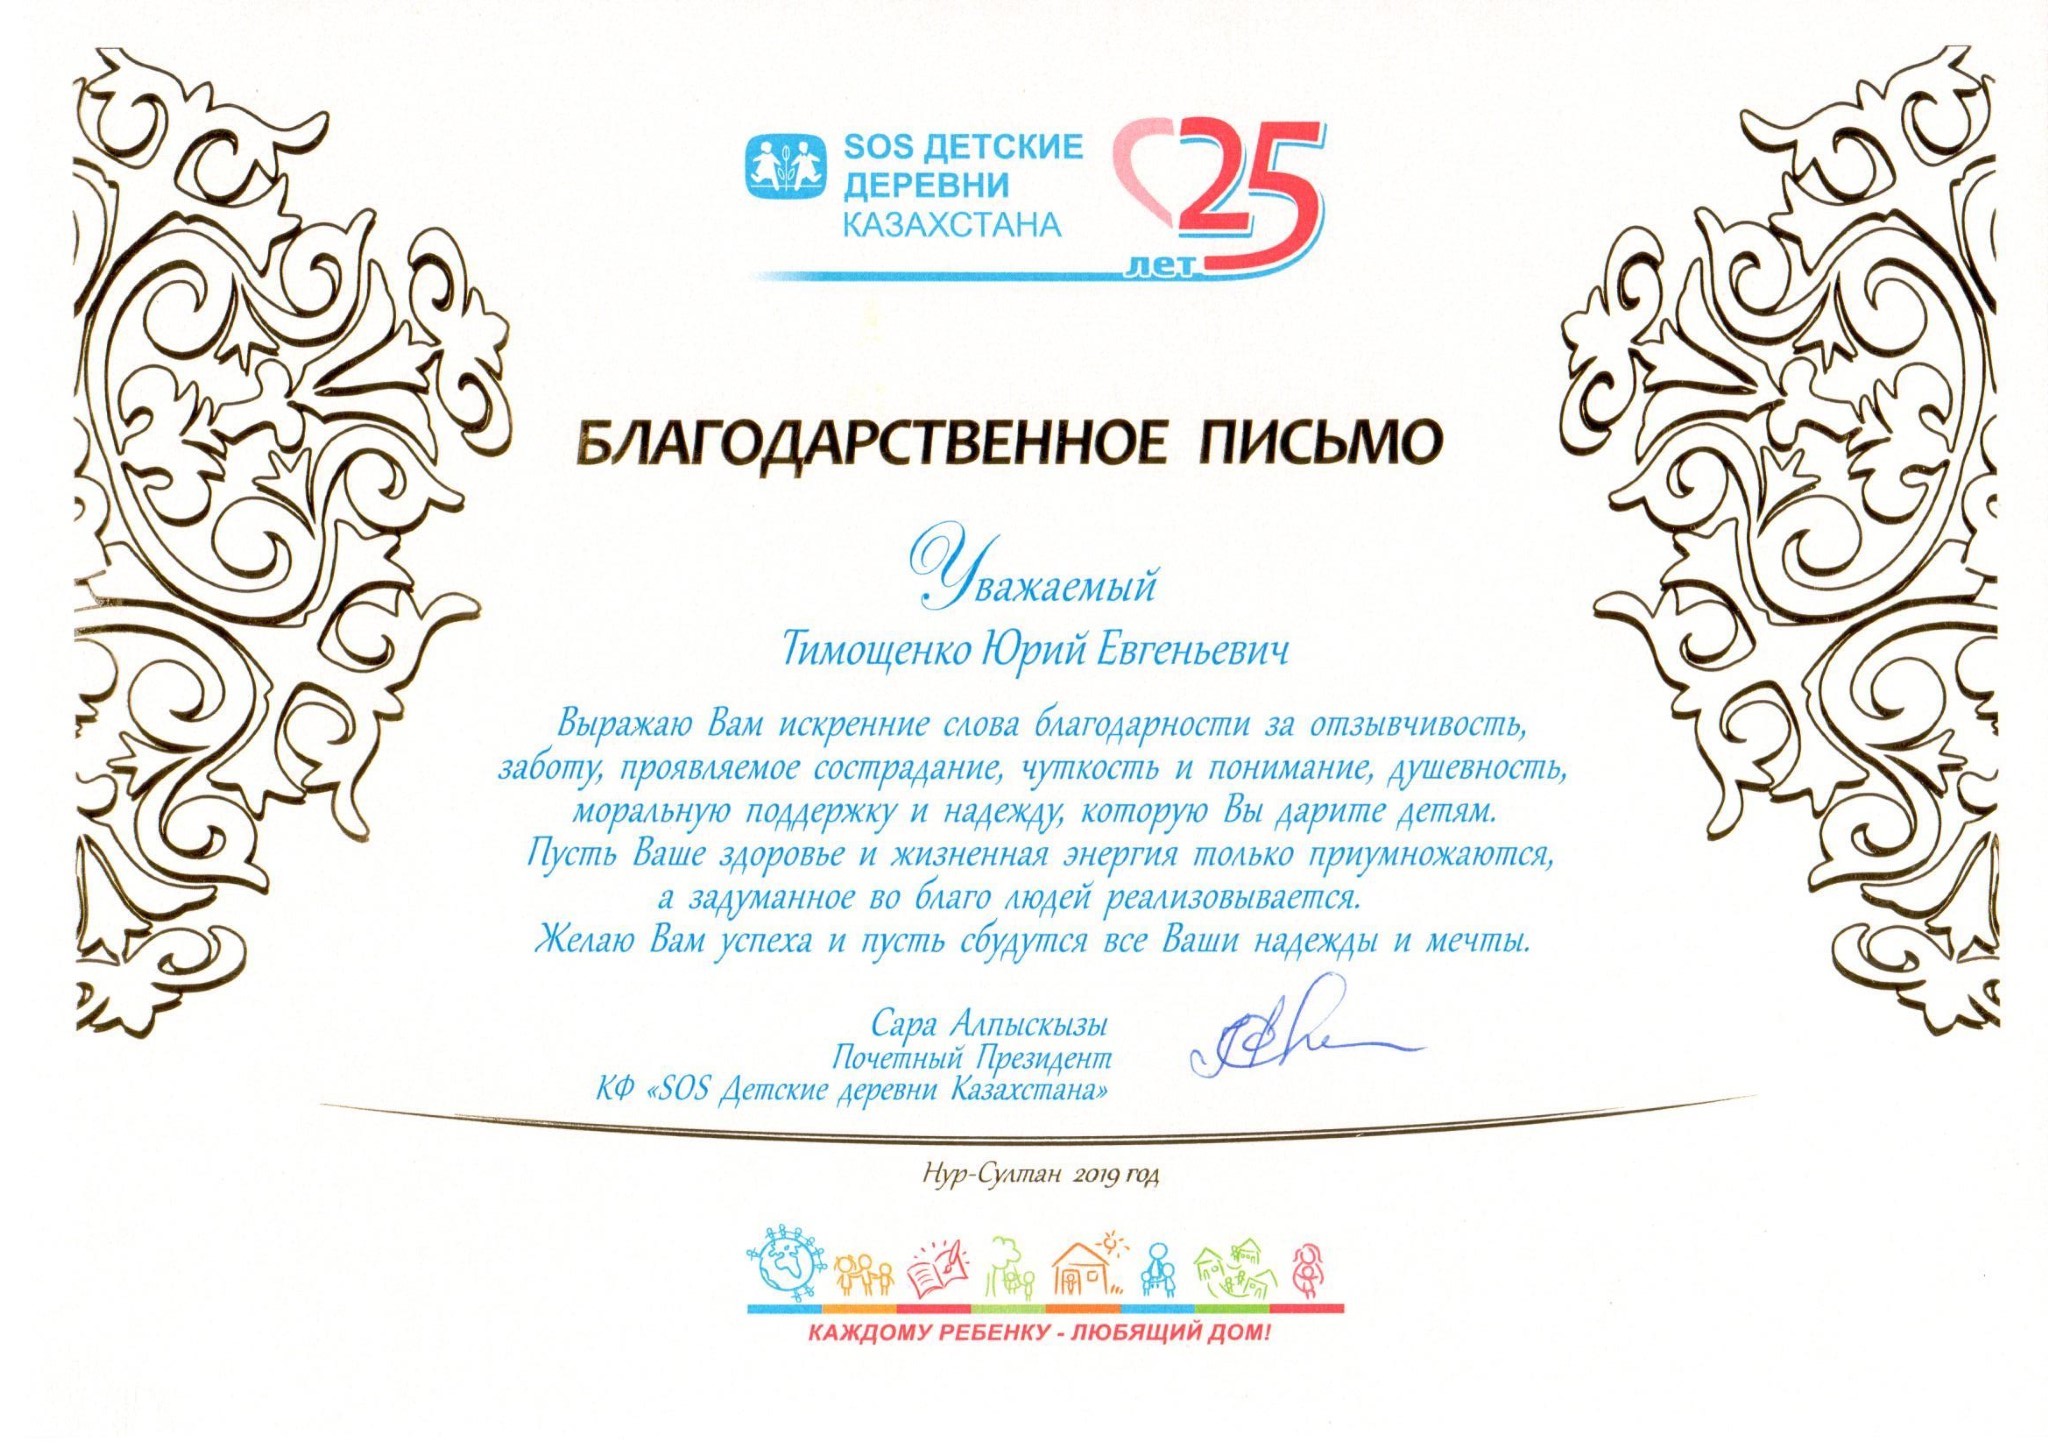 Депутат Тимощенко Ю.Е. принял участие на торжественном мероприятий, посвященном 25-летию КФ «SOS Детские деревни Казахстана»